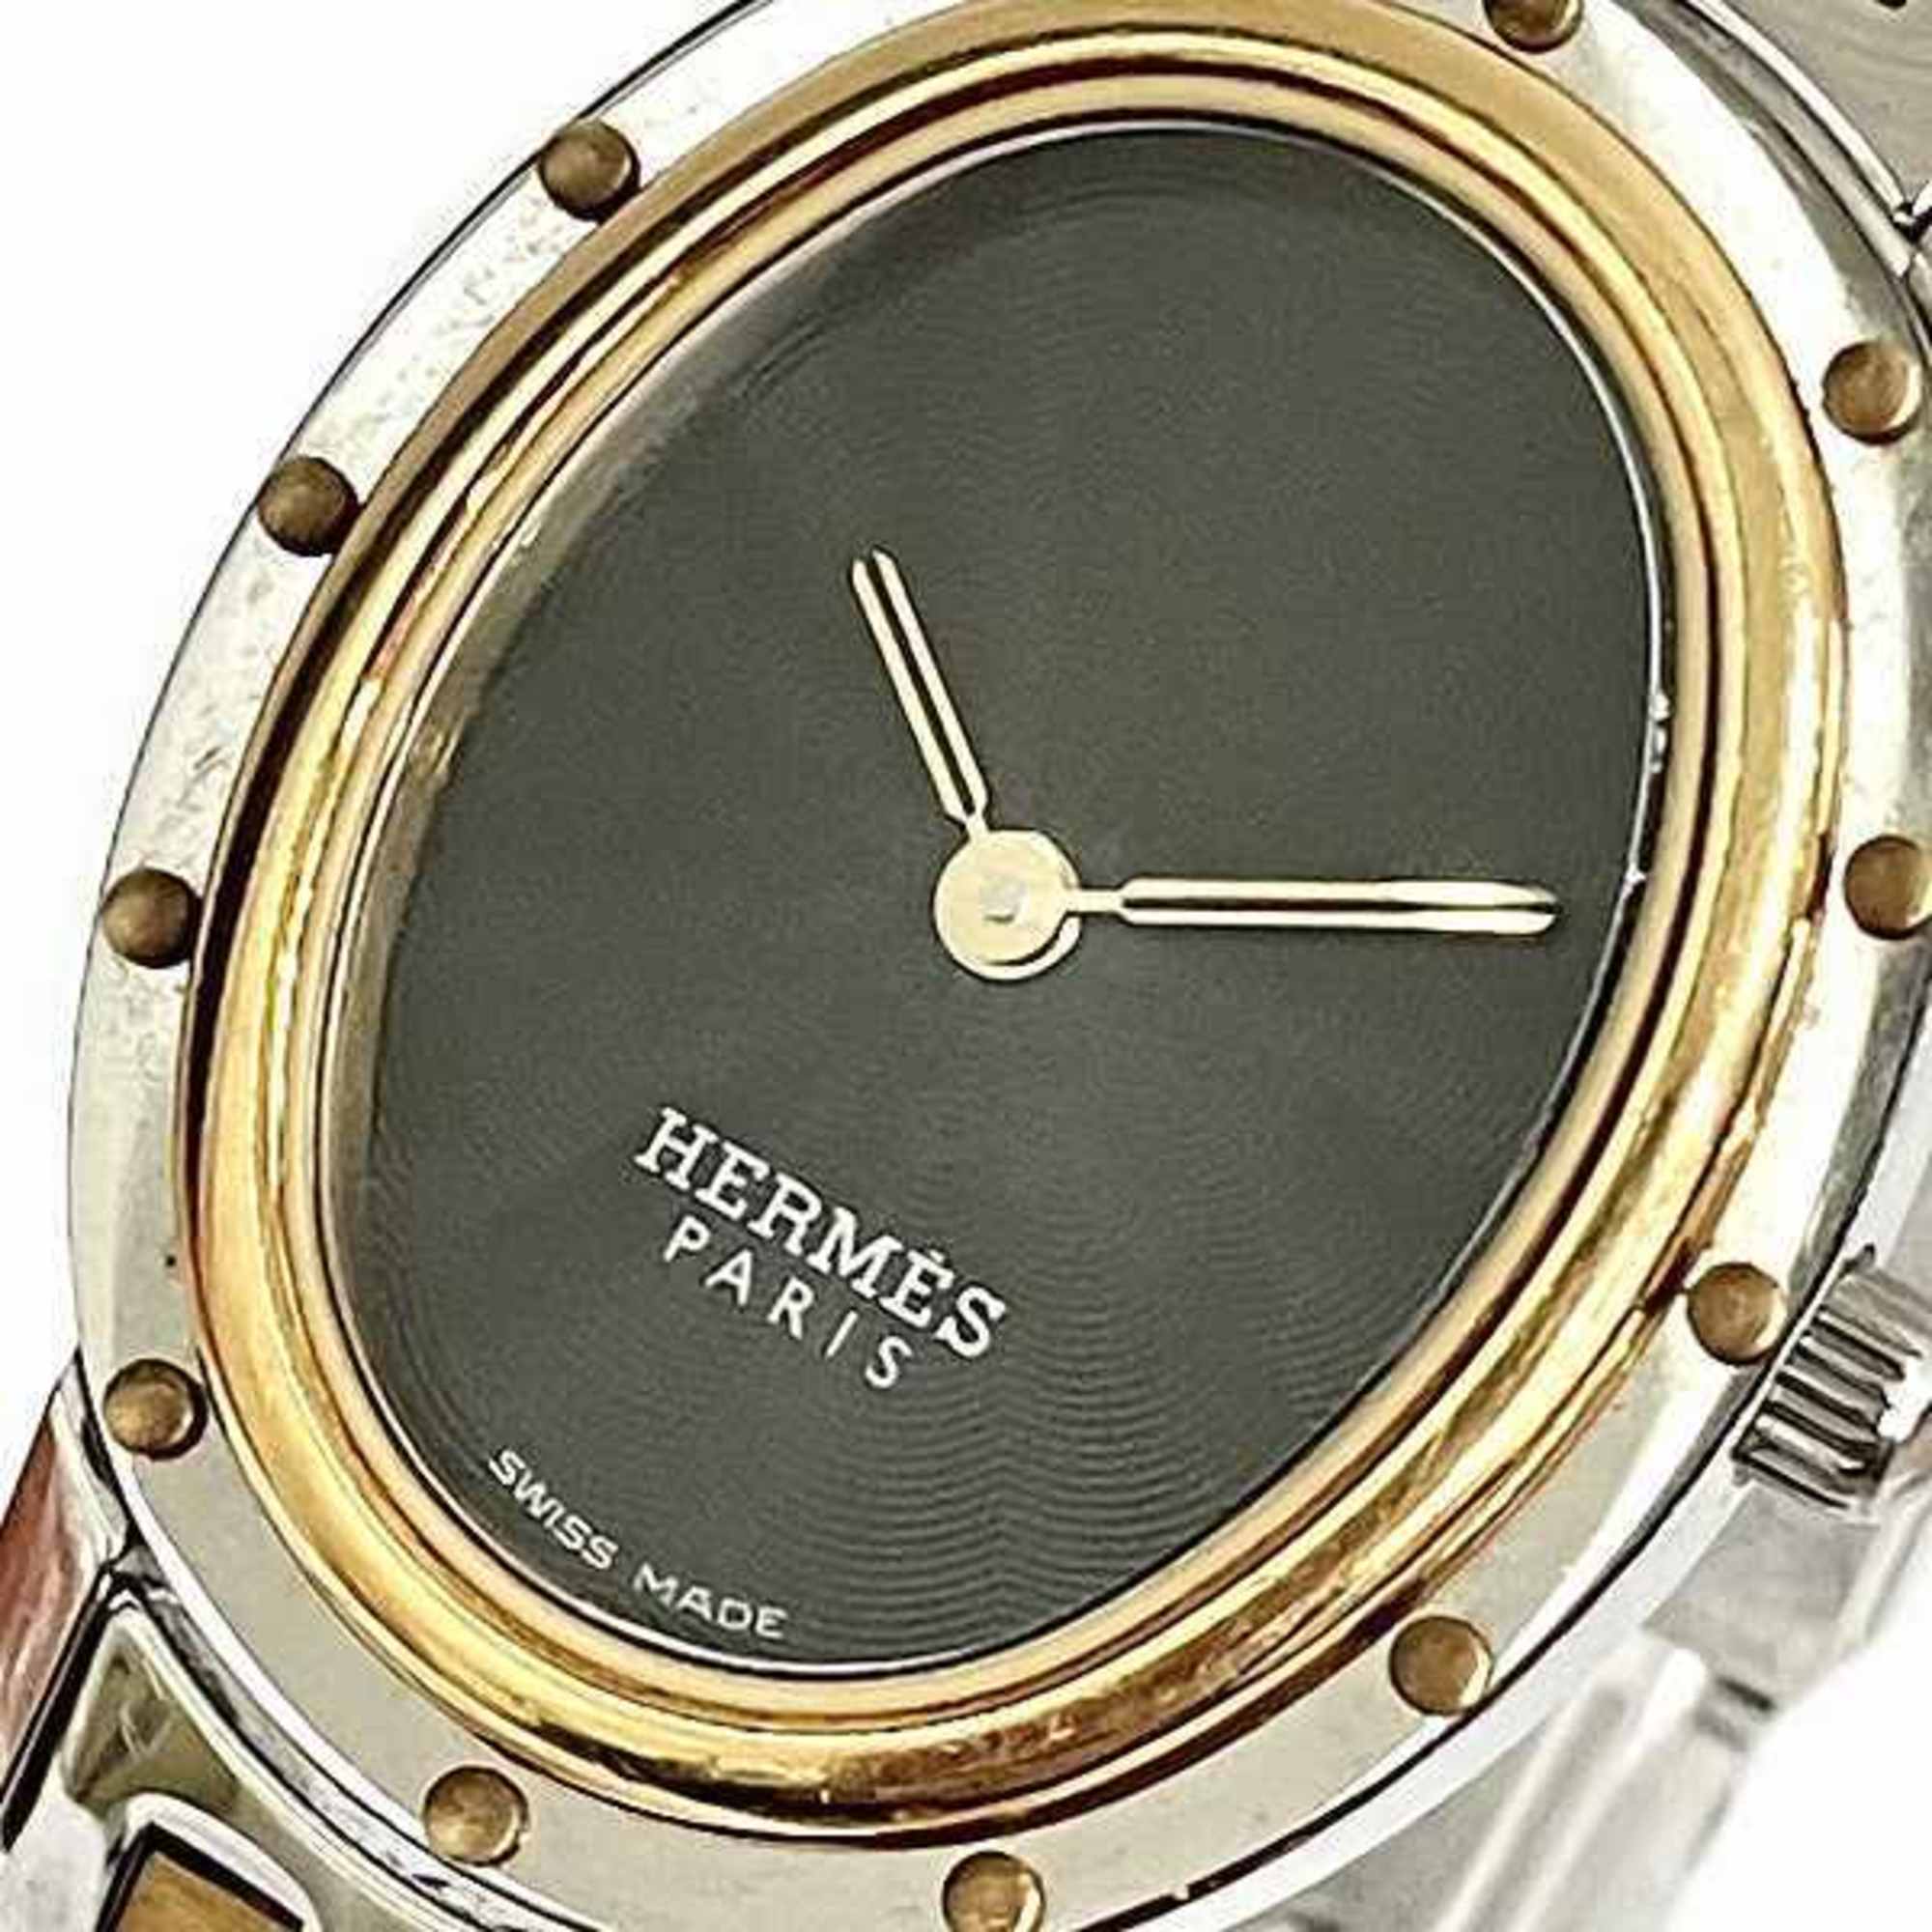 Hermes Clipper Oval CO1.220 Quartz Black Dial Watch Ladies